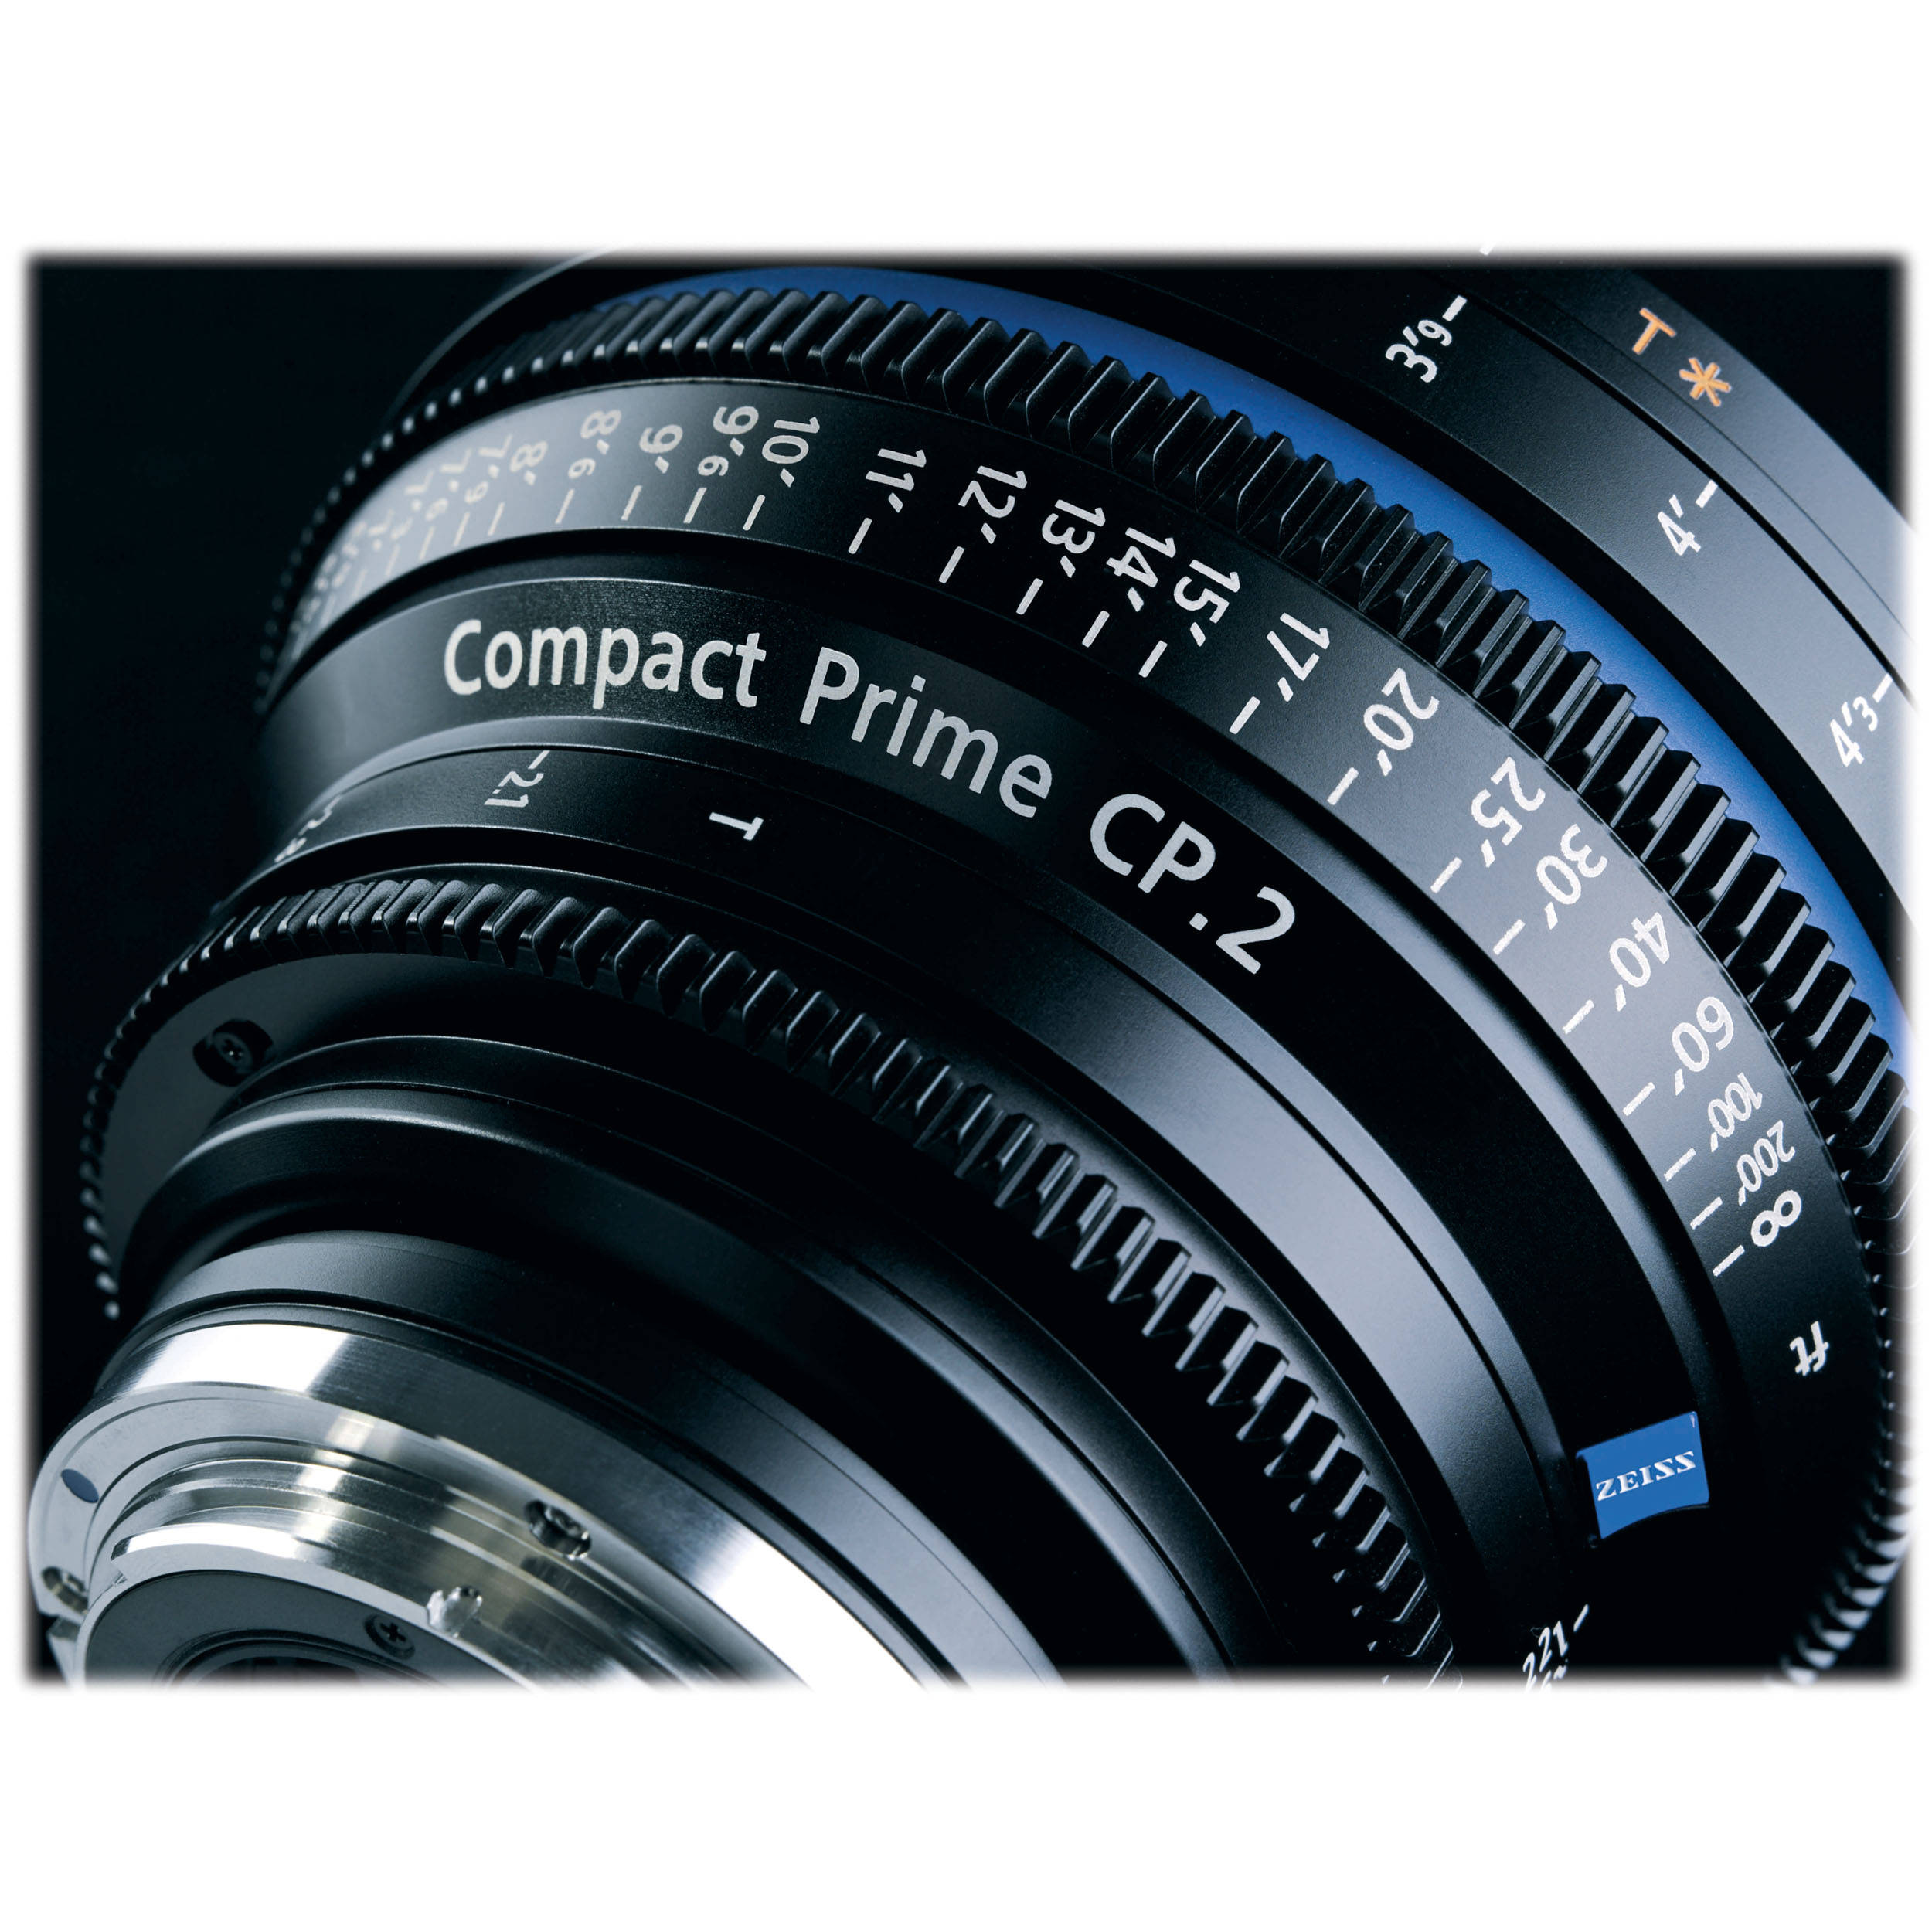 Zeiss Compact Prime CP.2 50mm/T2.1 Makro Cine Lens (PL Mount)